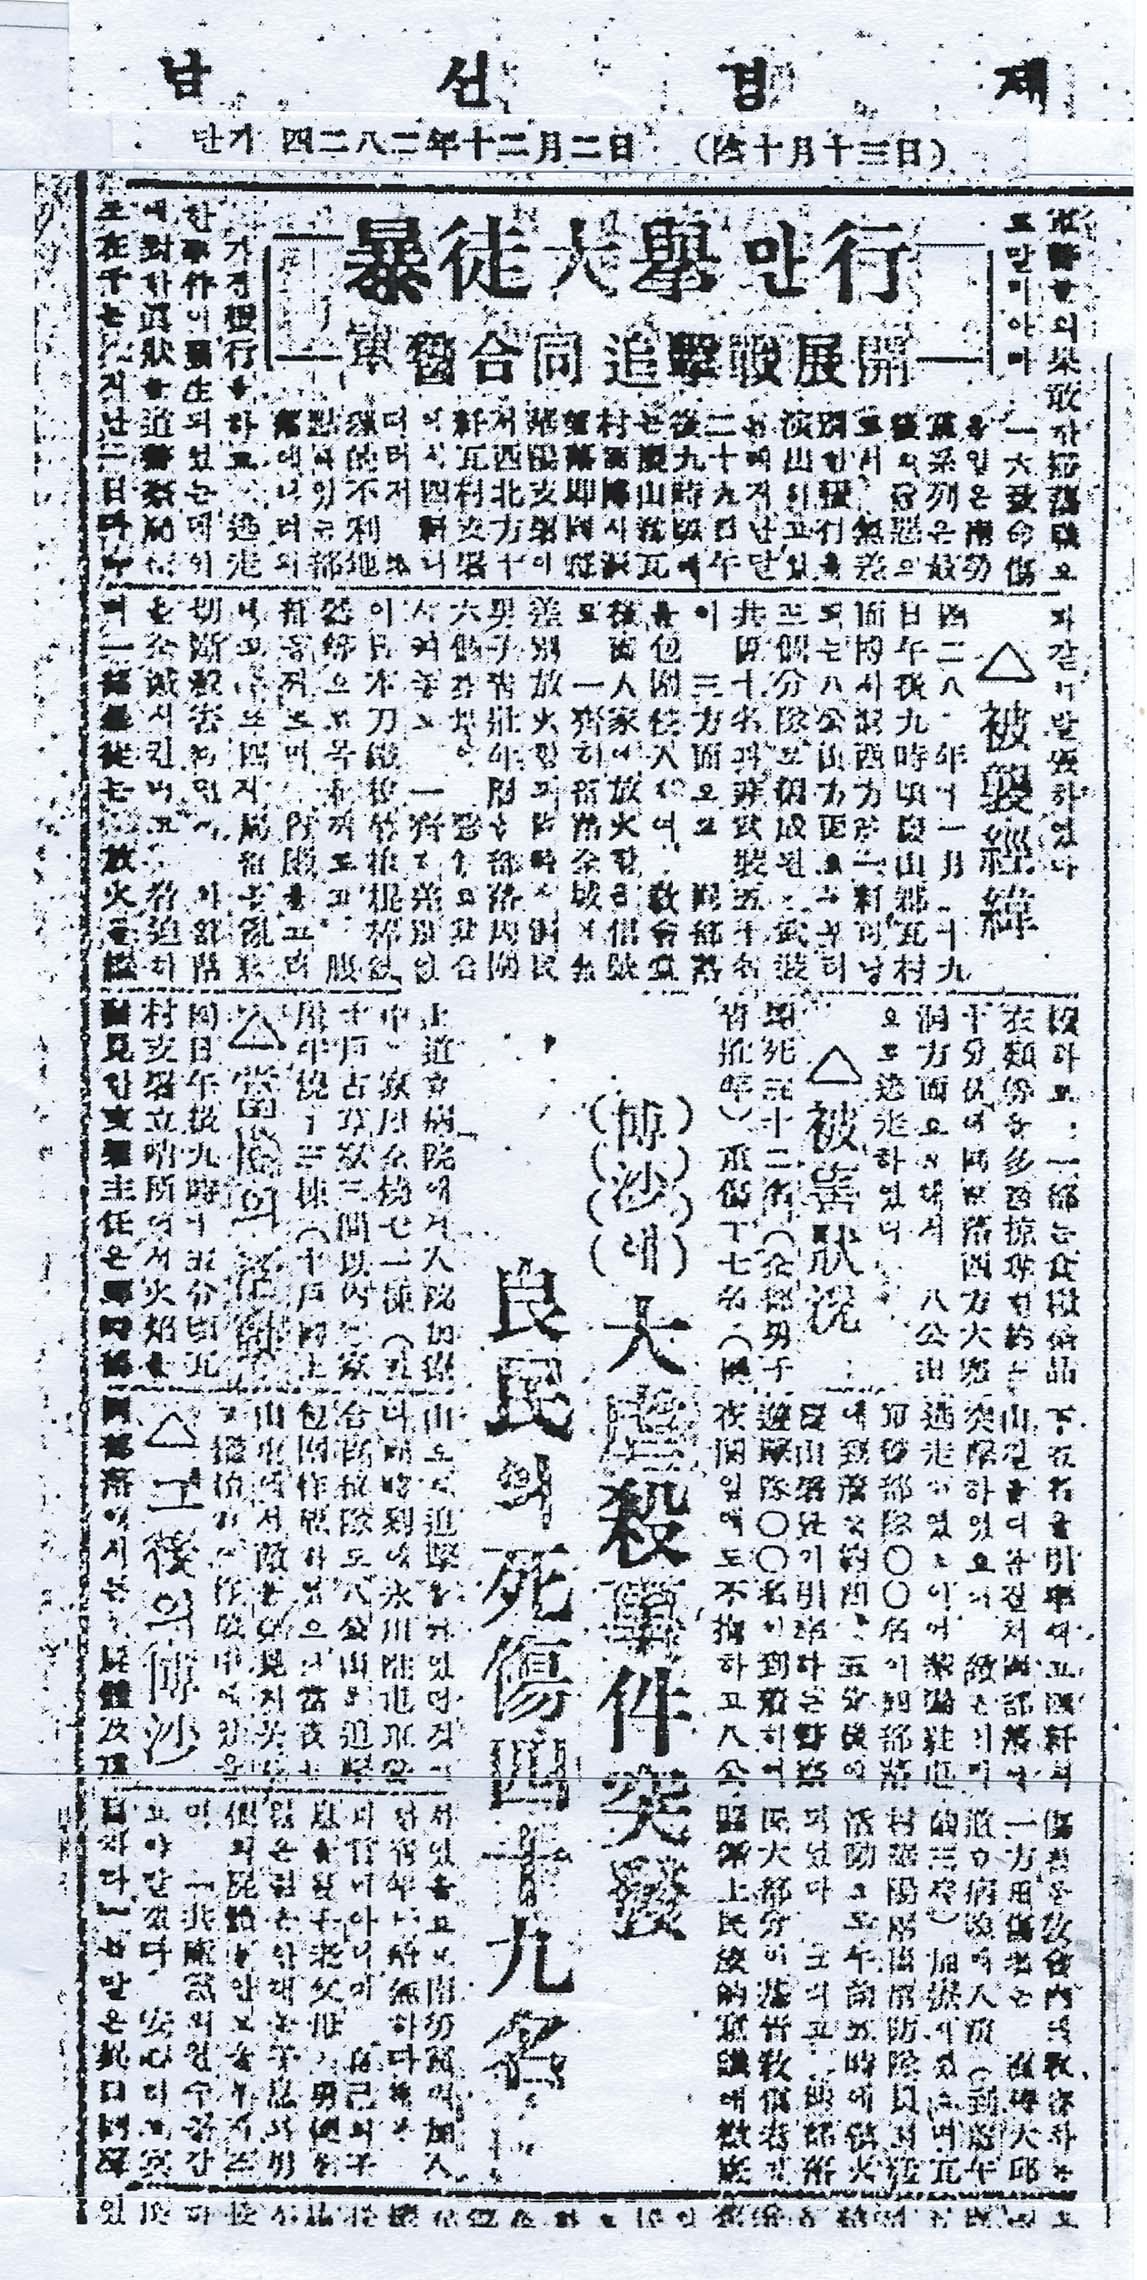 박사리 사건이 살린 1949년 당시의 신문 기사.